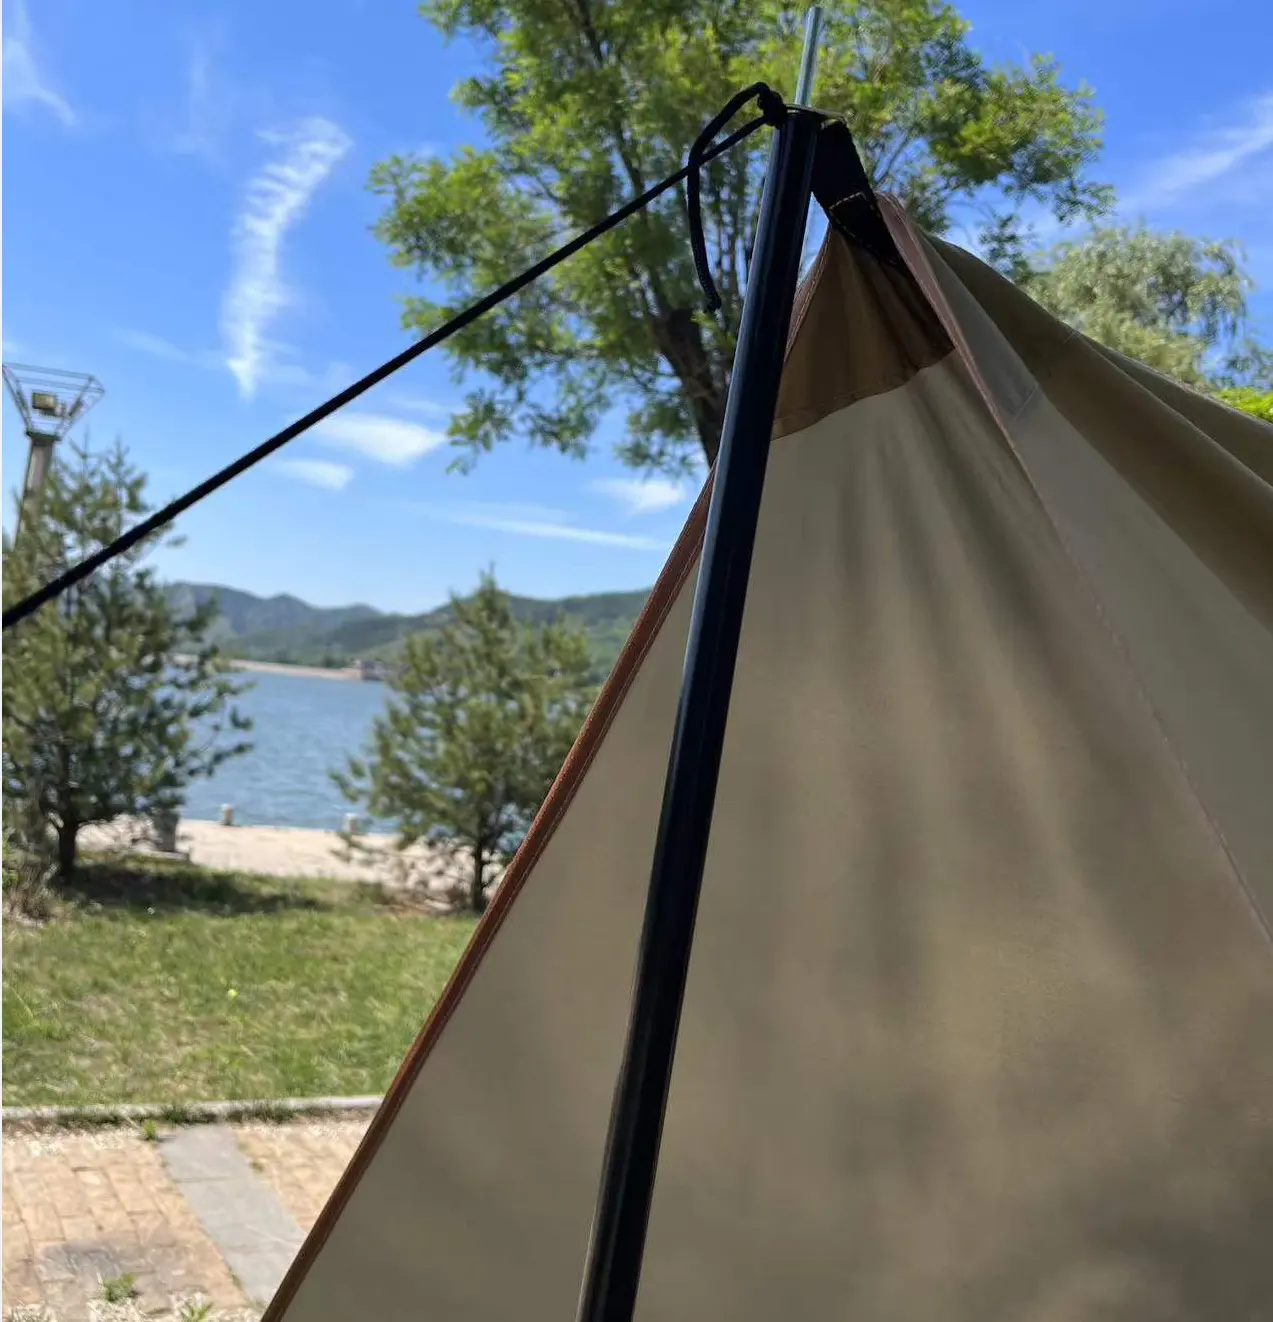 Kamp kutup için esnek fiberglas çadır direkleri/çadır destek çubukları plaj barınak Tarp tente teleskopik çadır direkleri